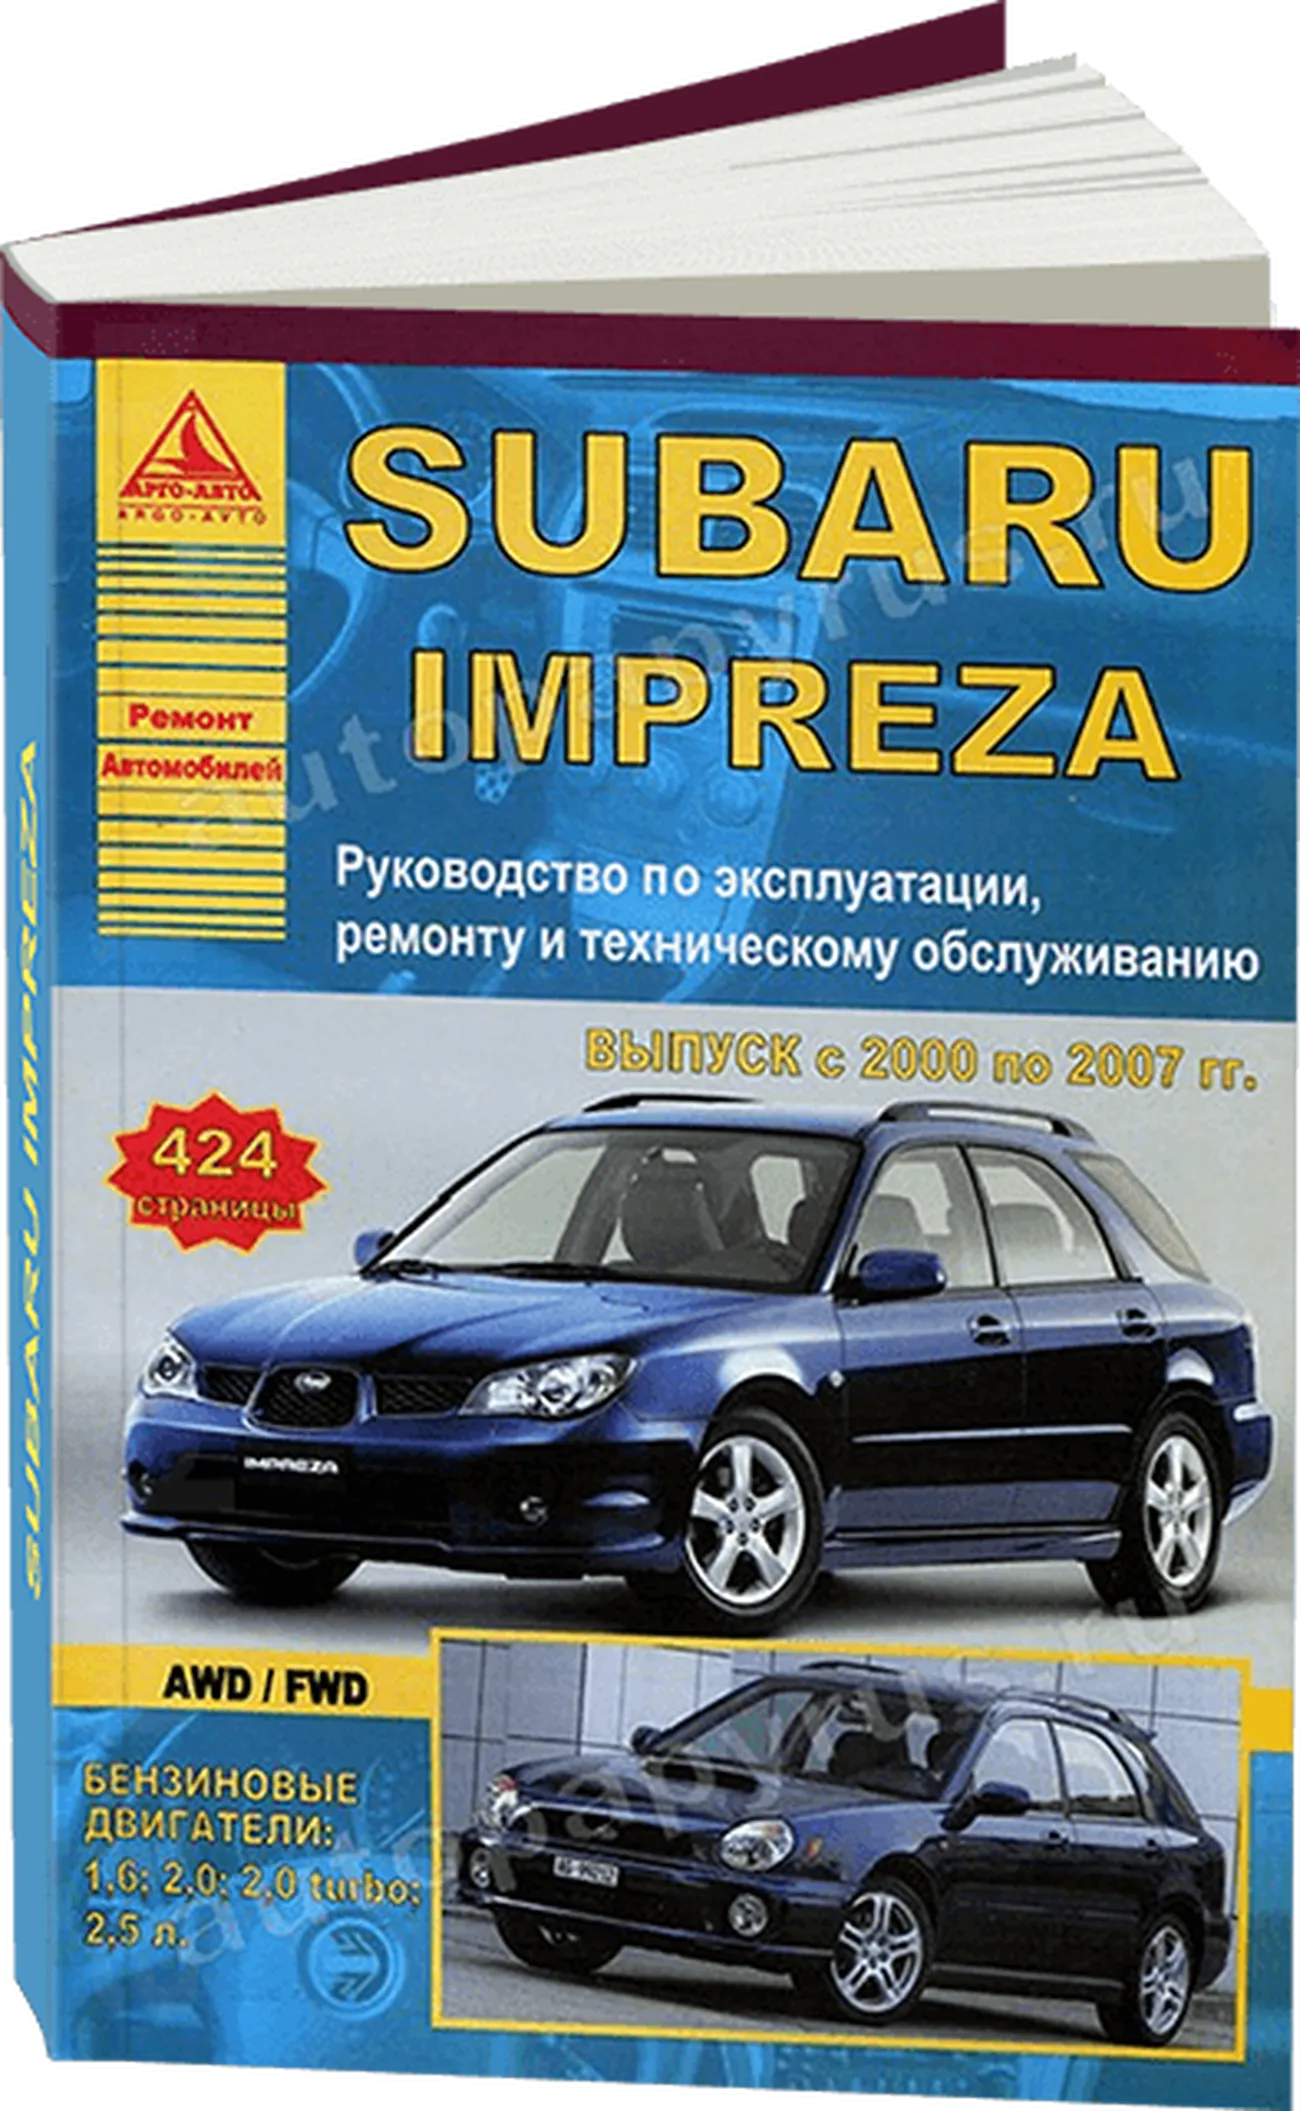 Книга: SUBARU IMPREZA (б) 2000-2007 г.в., рем., экспл., то | Арго-Авто